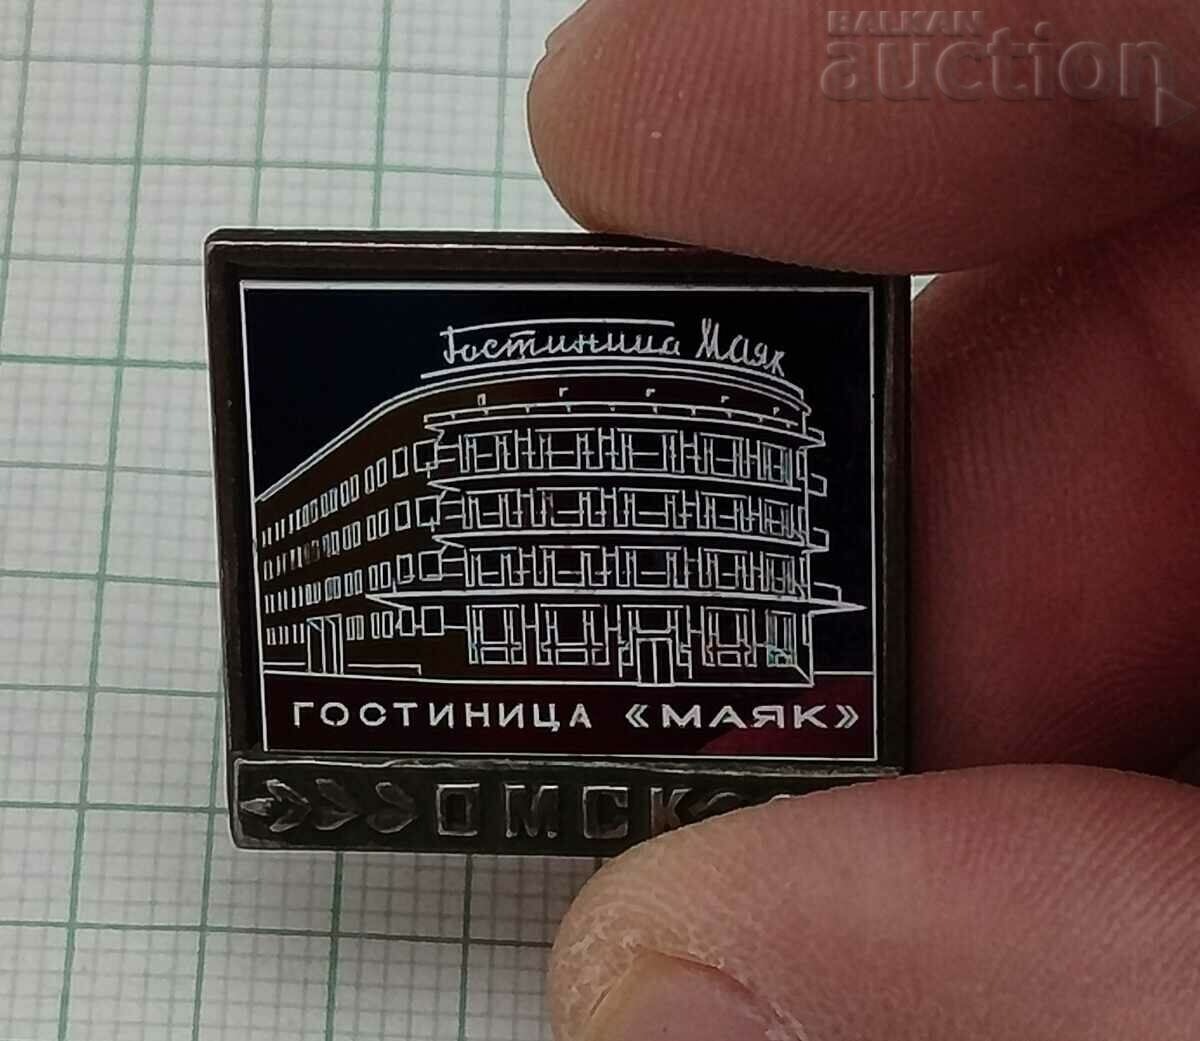 OMSK HOTEL "MAYAK" USSR BADGE